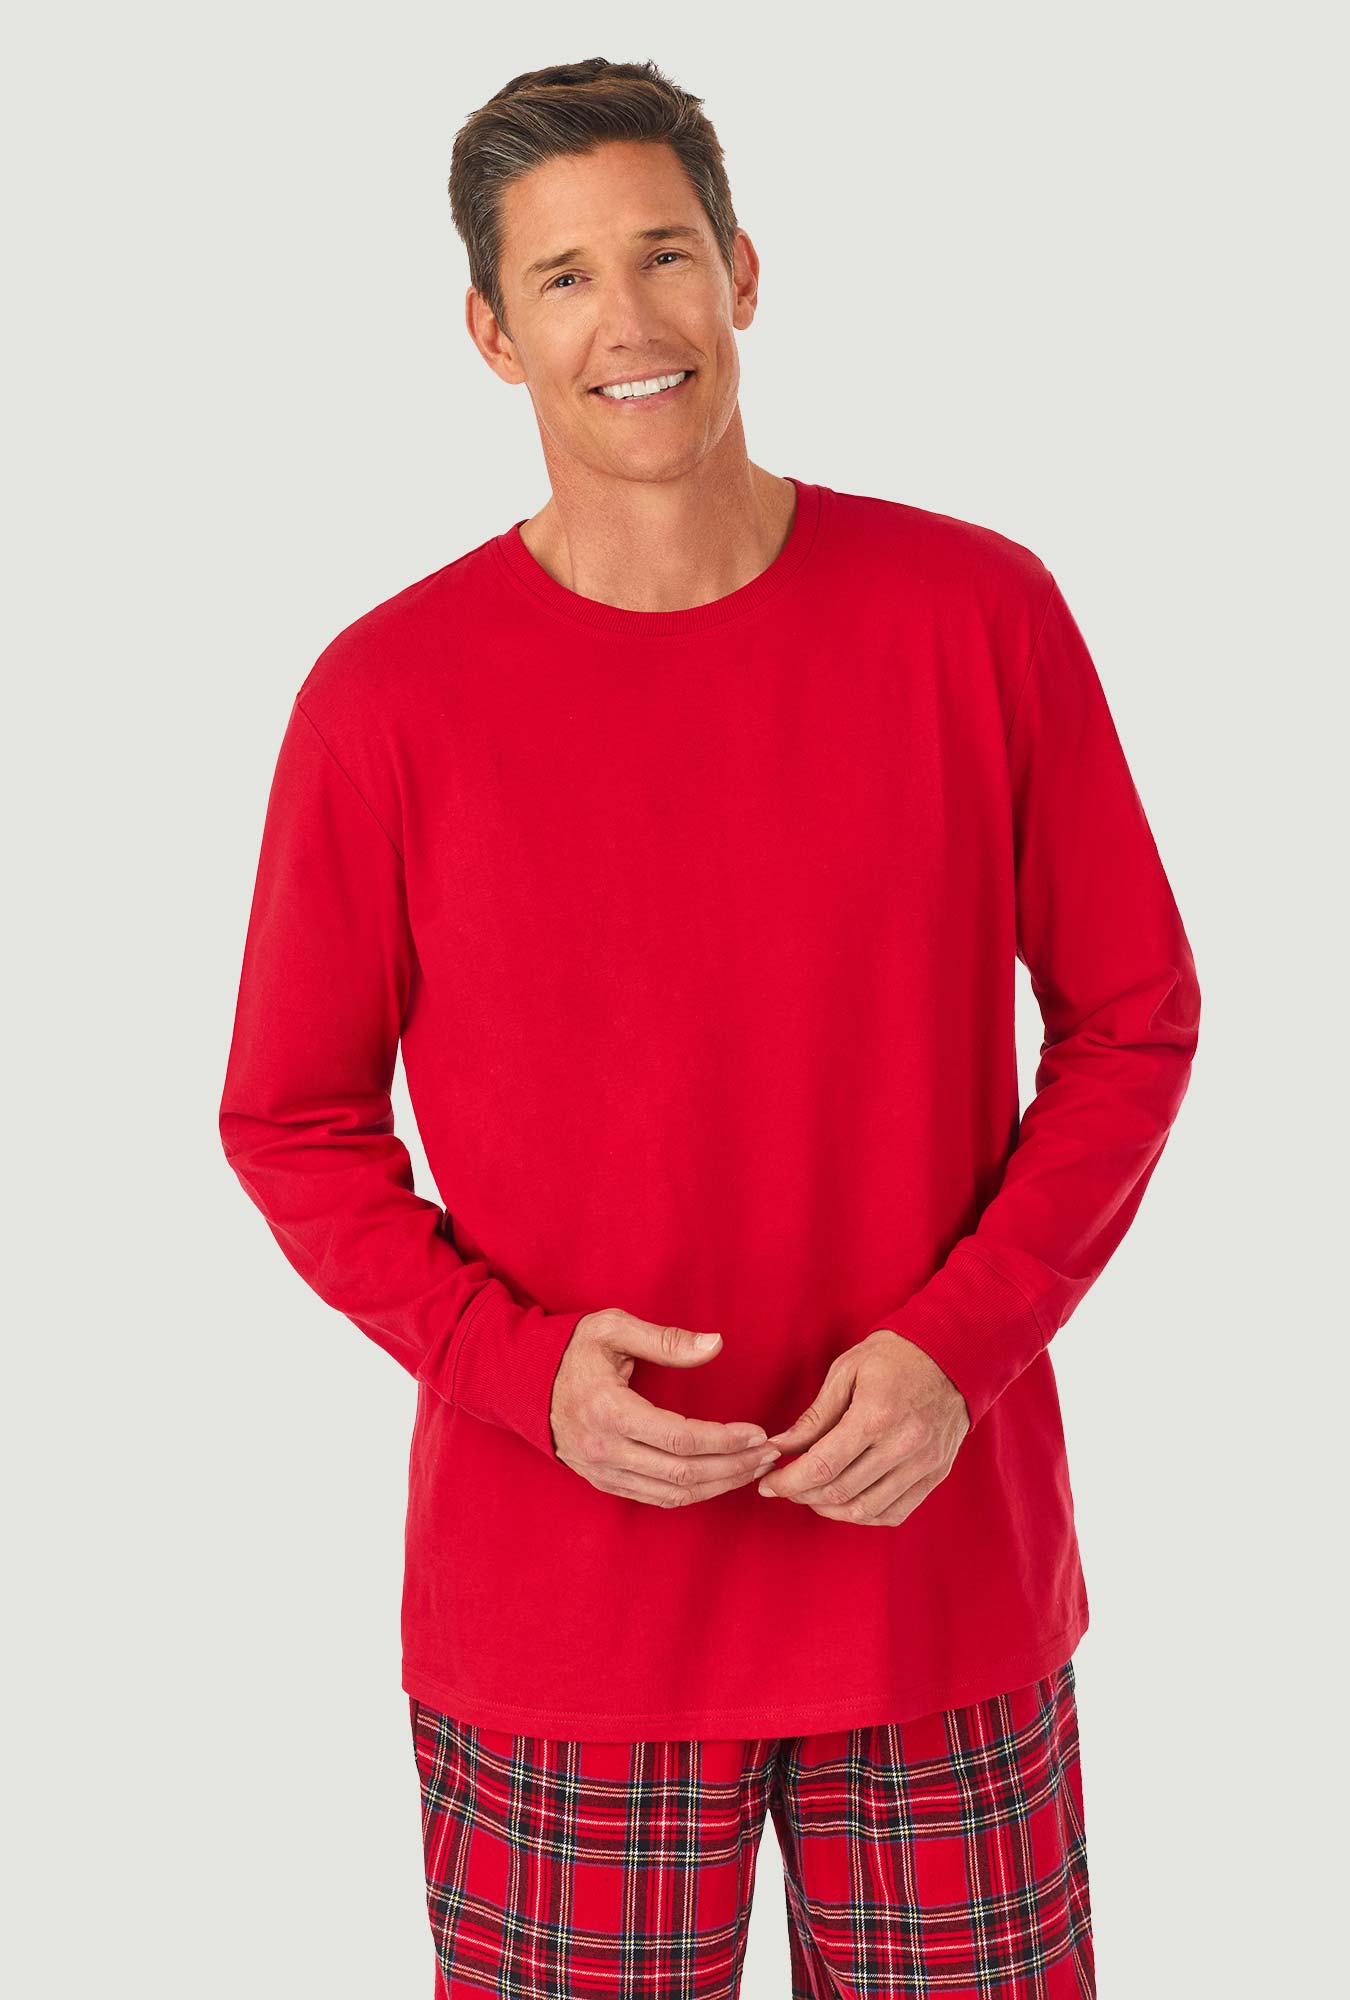 A man wearing a red tartan long sleeve knit & flannel pj set.